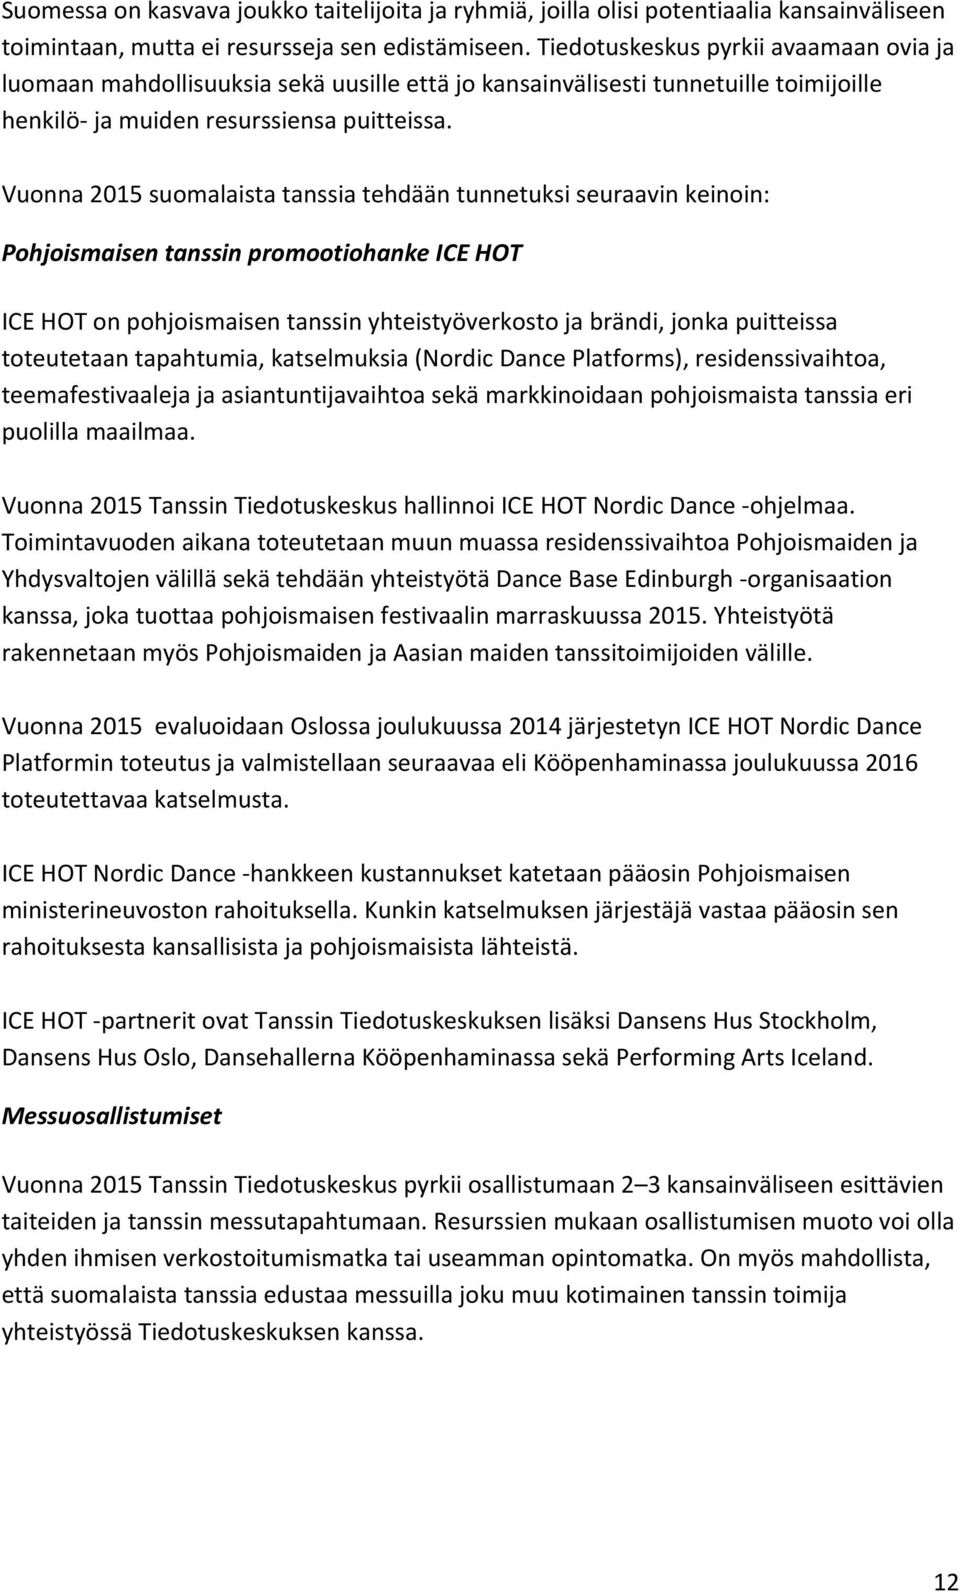 Vuonna 2015 suomalaista tanssia tehdään tunnetuksi seuraavin keinoin: Pohjoismaisen tanssin promootiohanke ICE HOT ICE HOT on pohjoismaisen tanssin yhteistyöverkosto ja brändi, jonka puitteissa